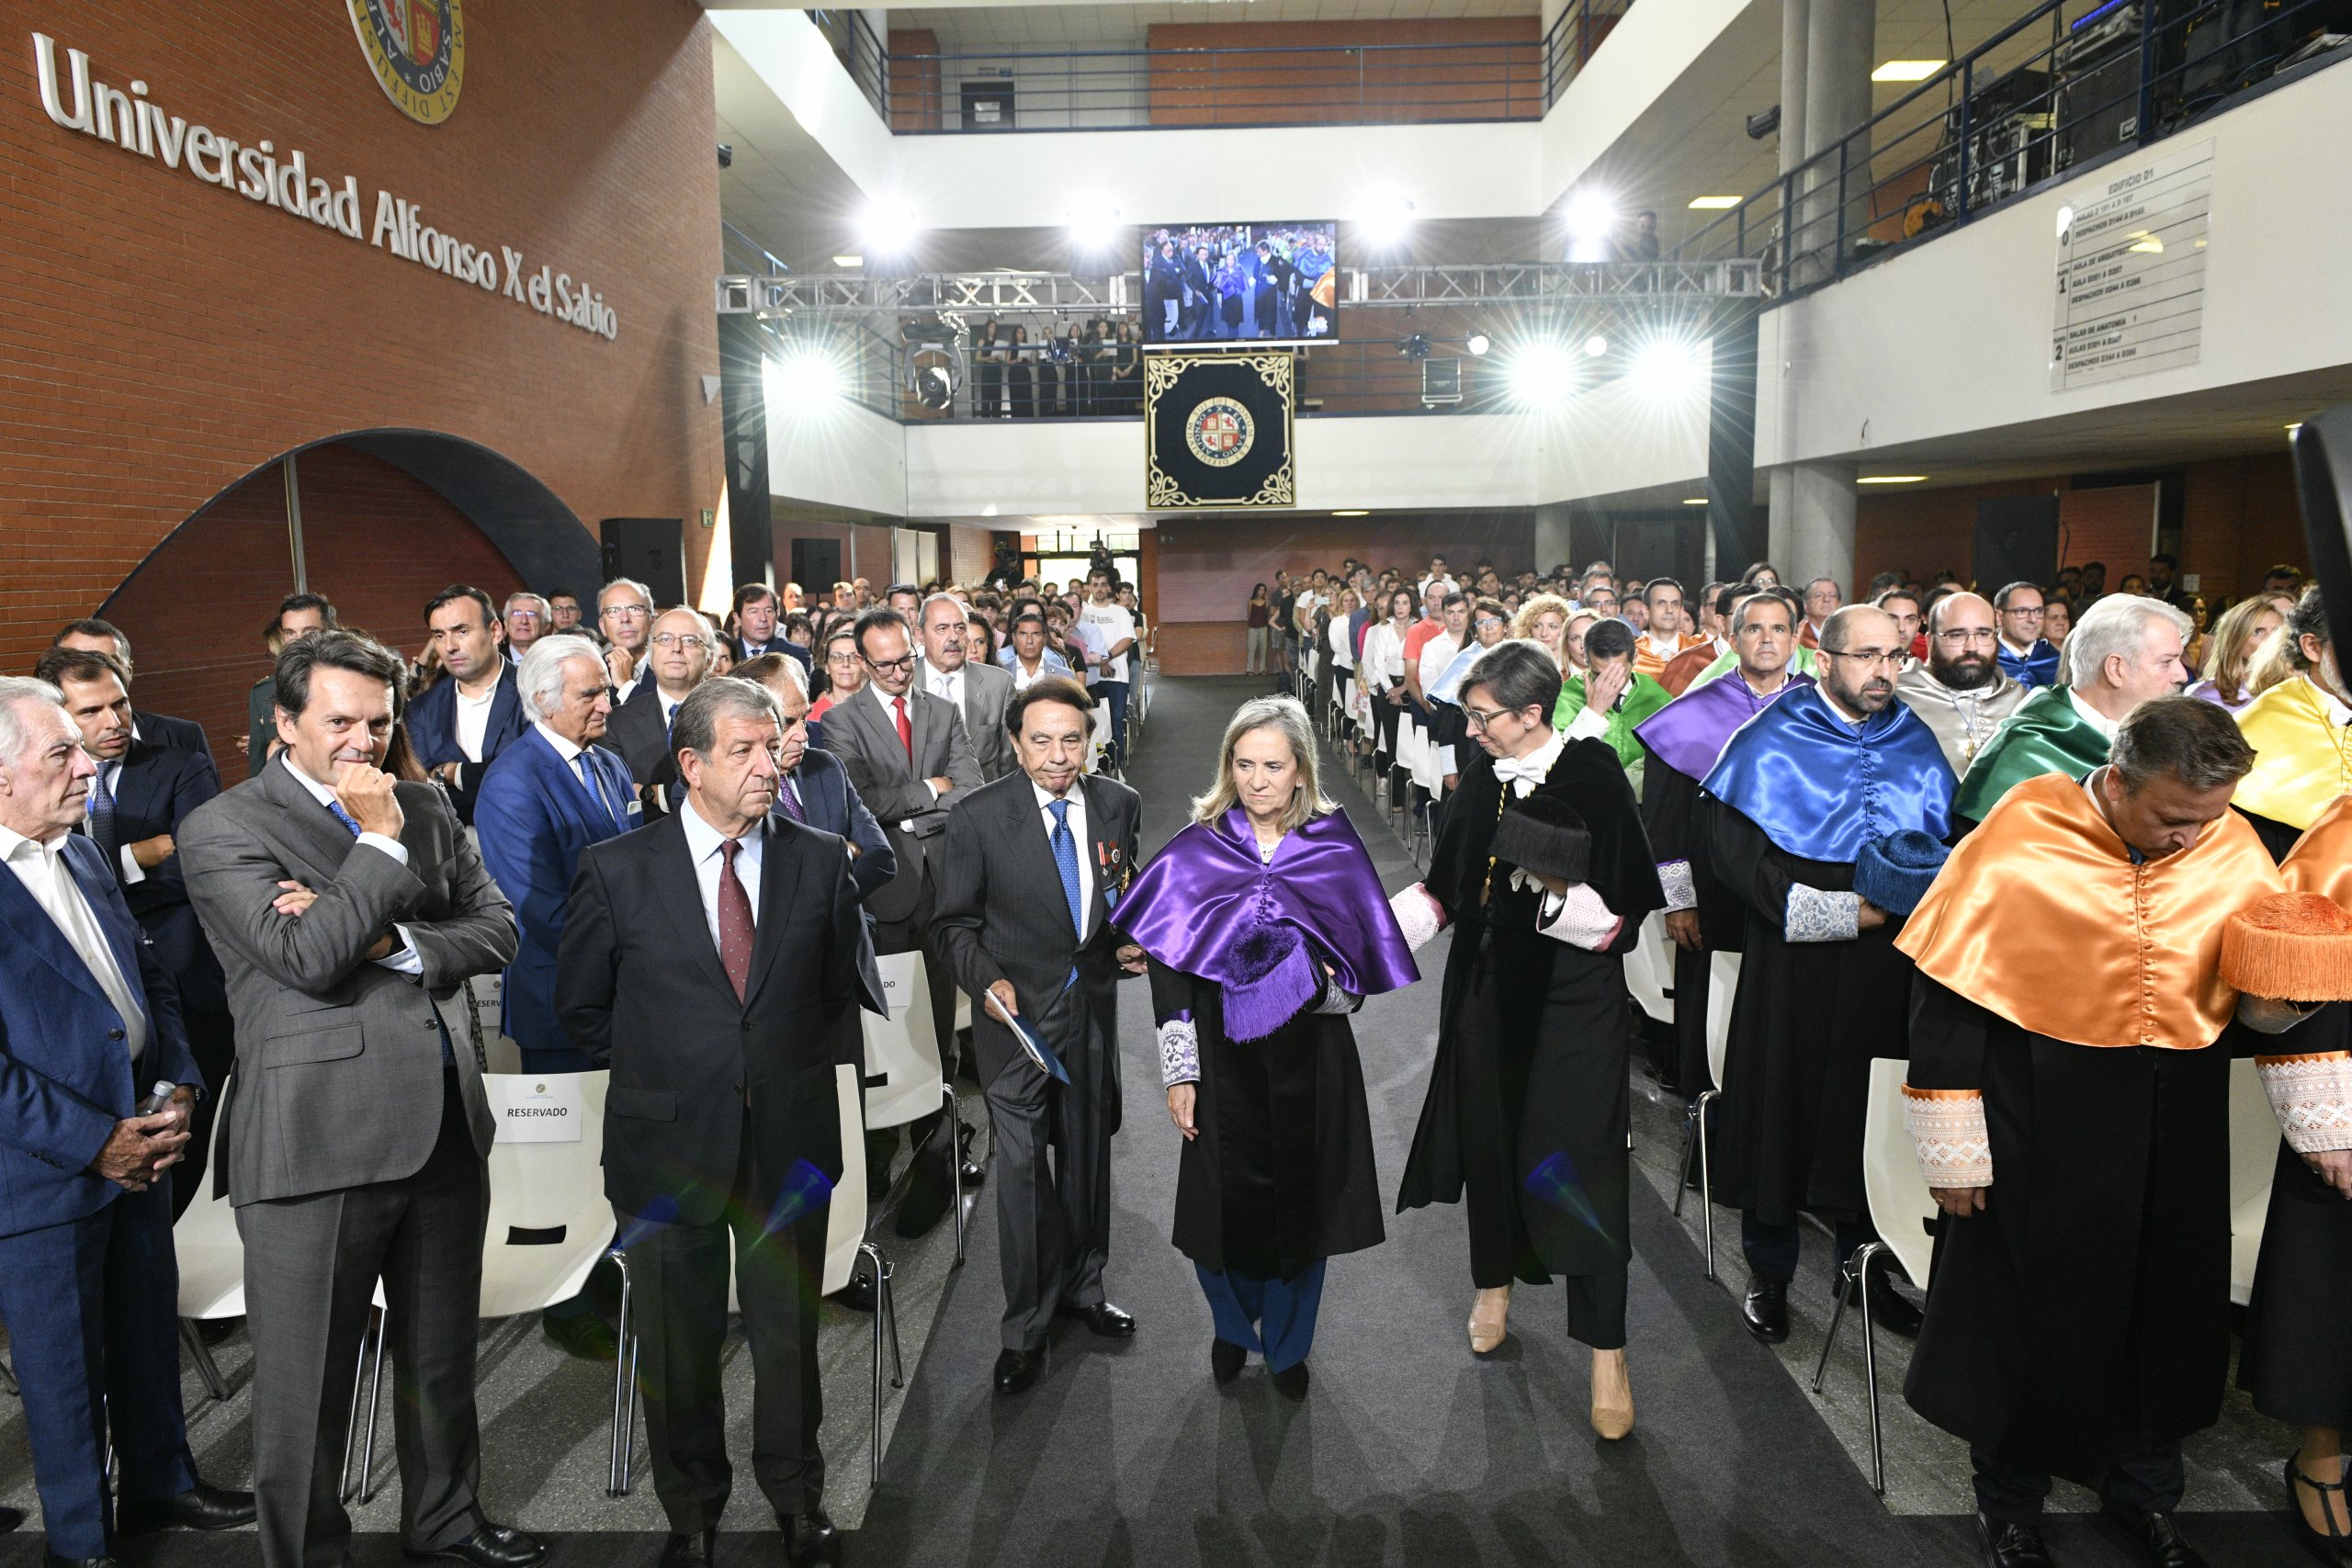 Alcalde y autoridades durante el acto académico.